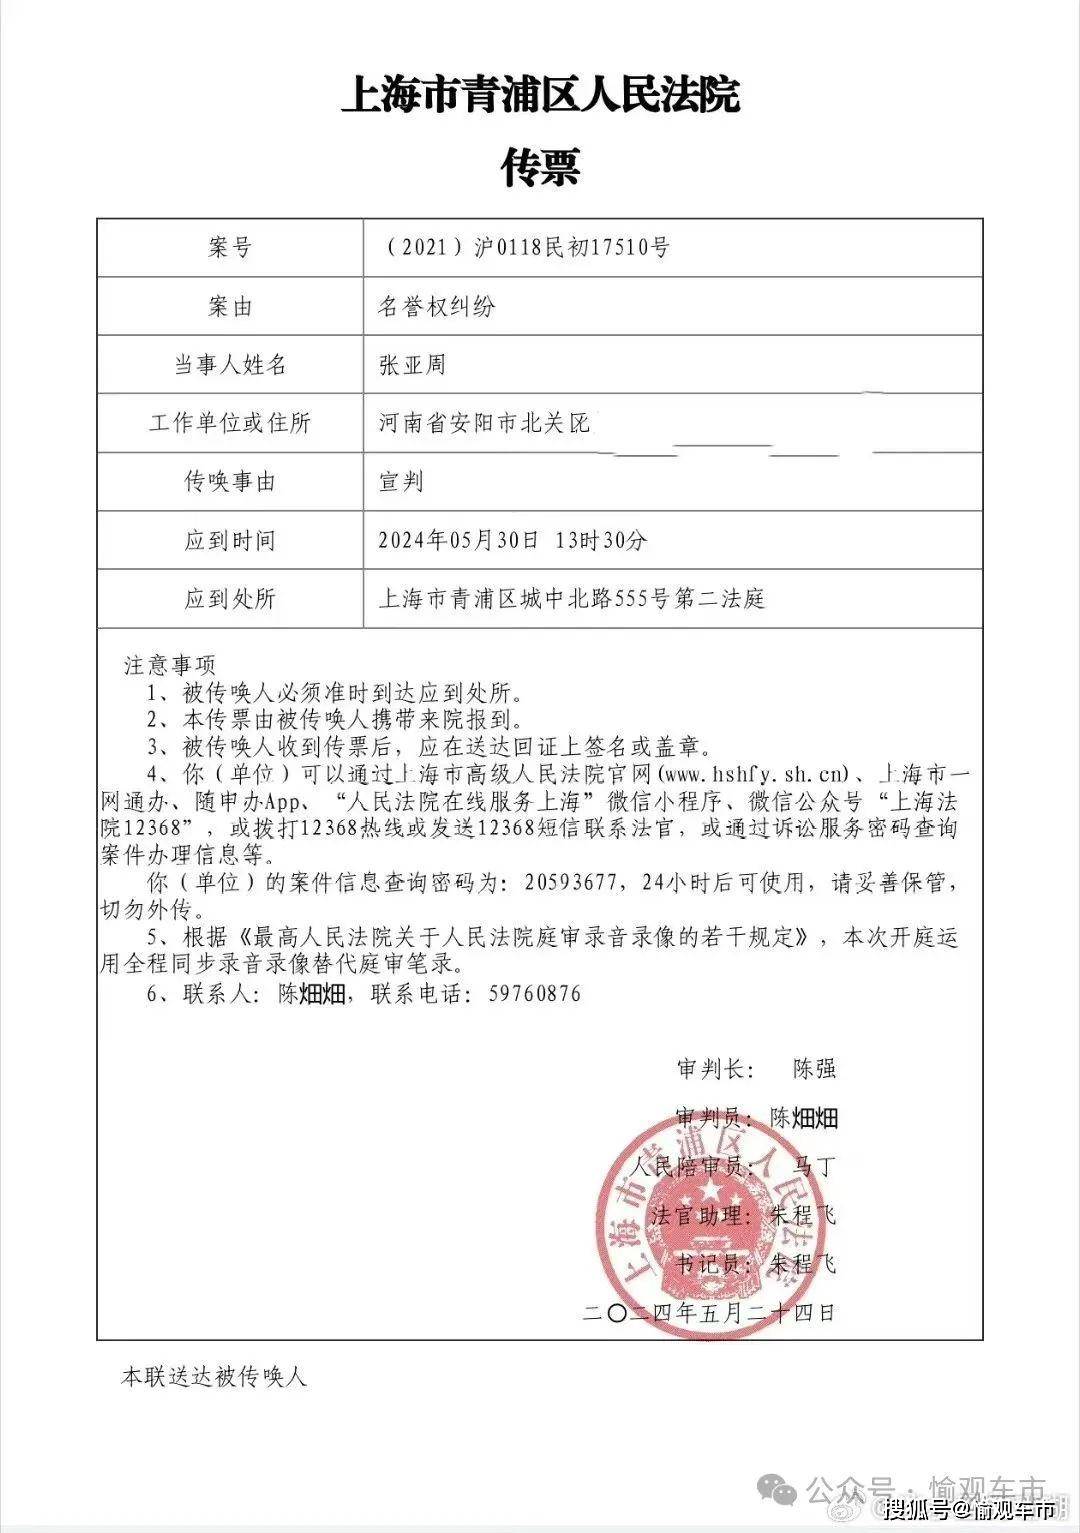 696969根据上海市青浦人民法院传票显示:该案将于2024年5月30日